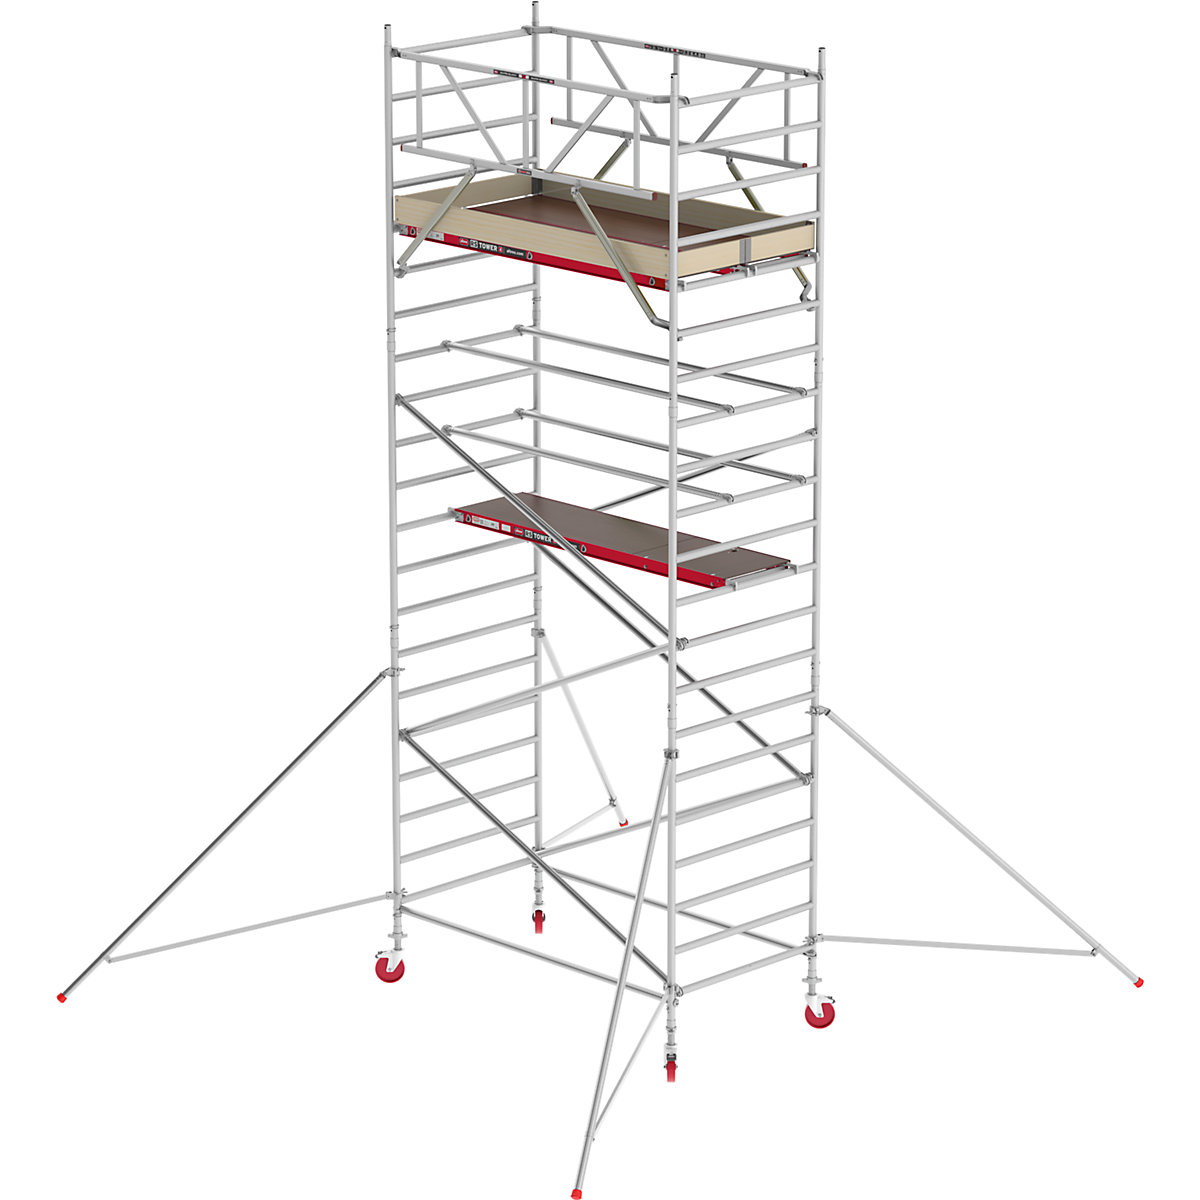 Schelă mobilă RS TOWER 42 lată – Altrex, platformă din lemn, lungime 2,45 m, înălțime de lucru 7,20 m-6